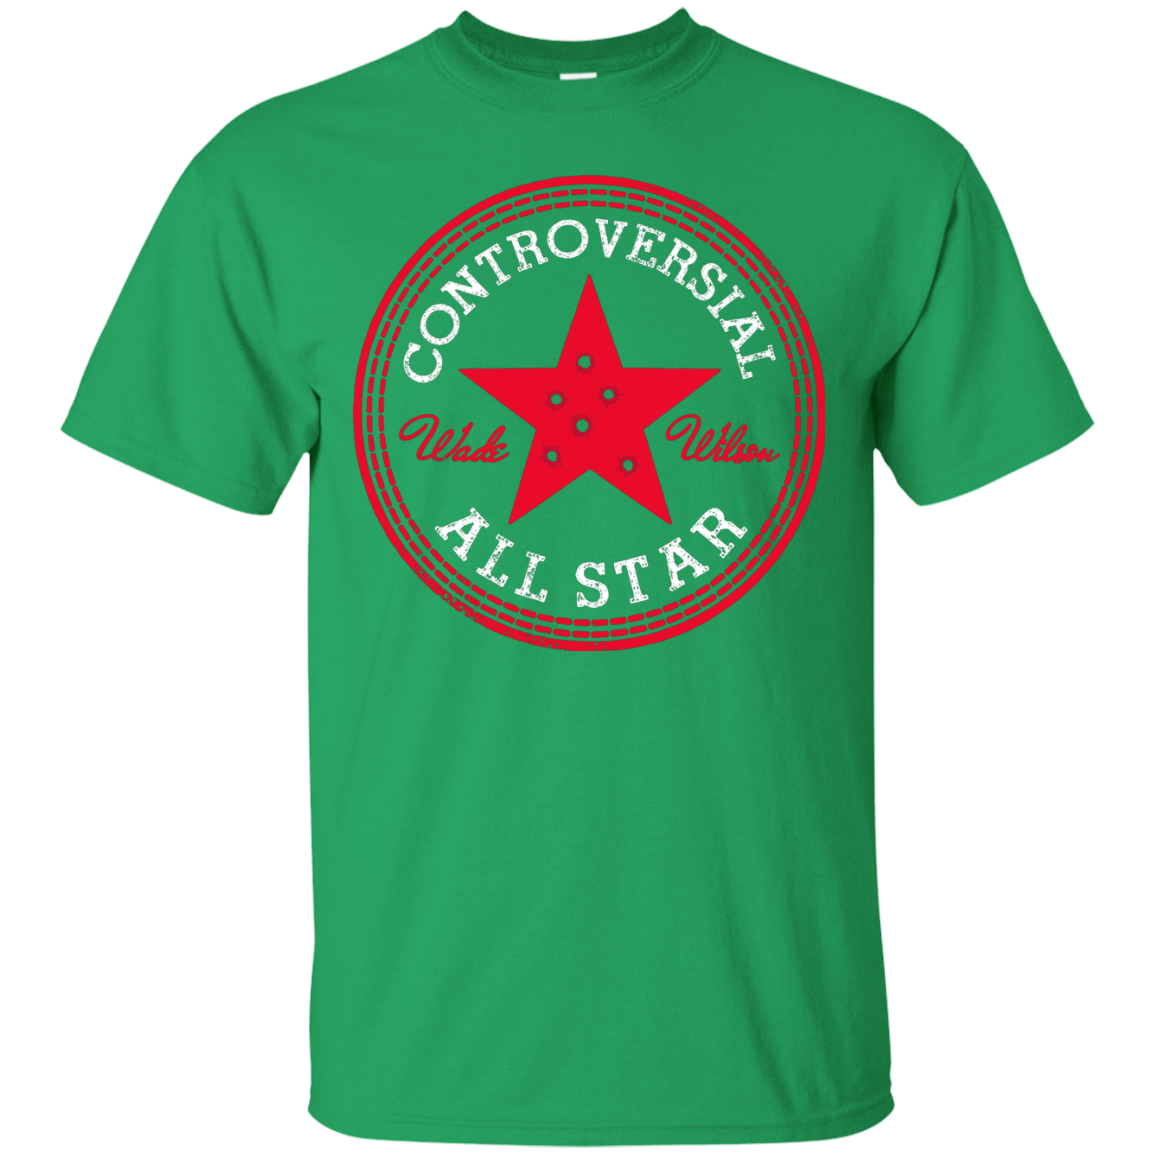 T-Shirts Irish Green / Small All Star T-Shirt